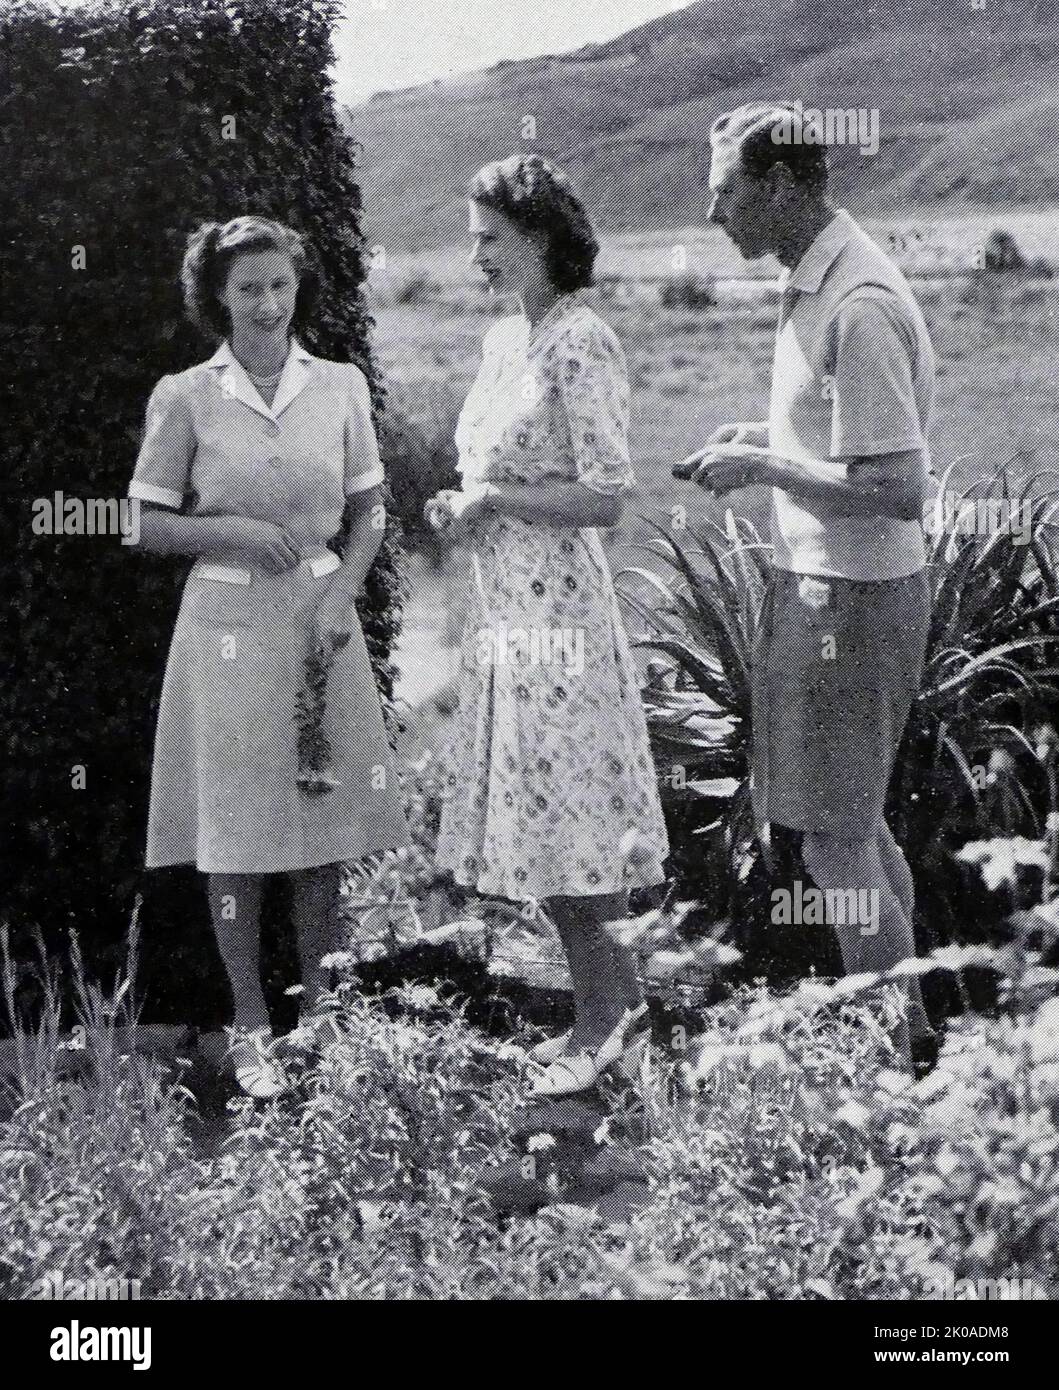 La princesa Margarita, la princesa Isabel, (más tarde reina Isabel II), de Inglaterra, con su padre el rey Jorge VI, de gira por Sudáfrica, 1947 Foto de stock